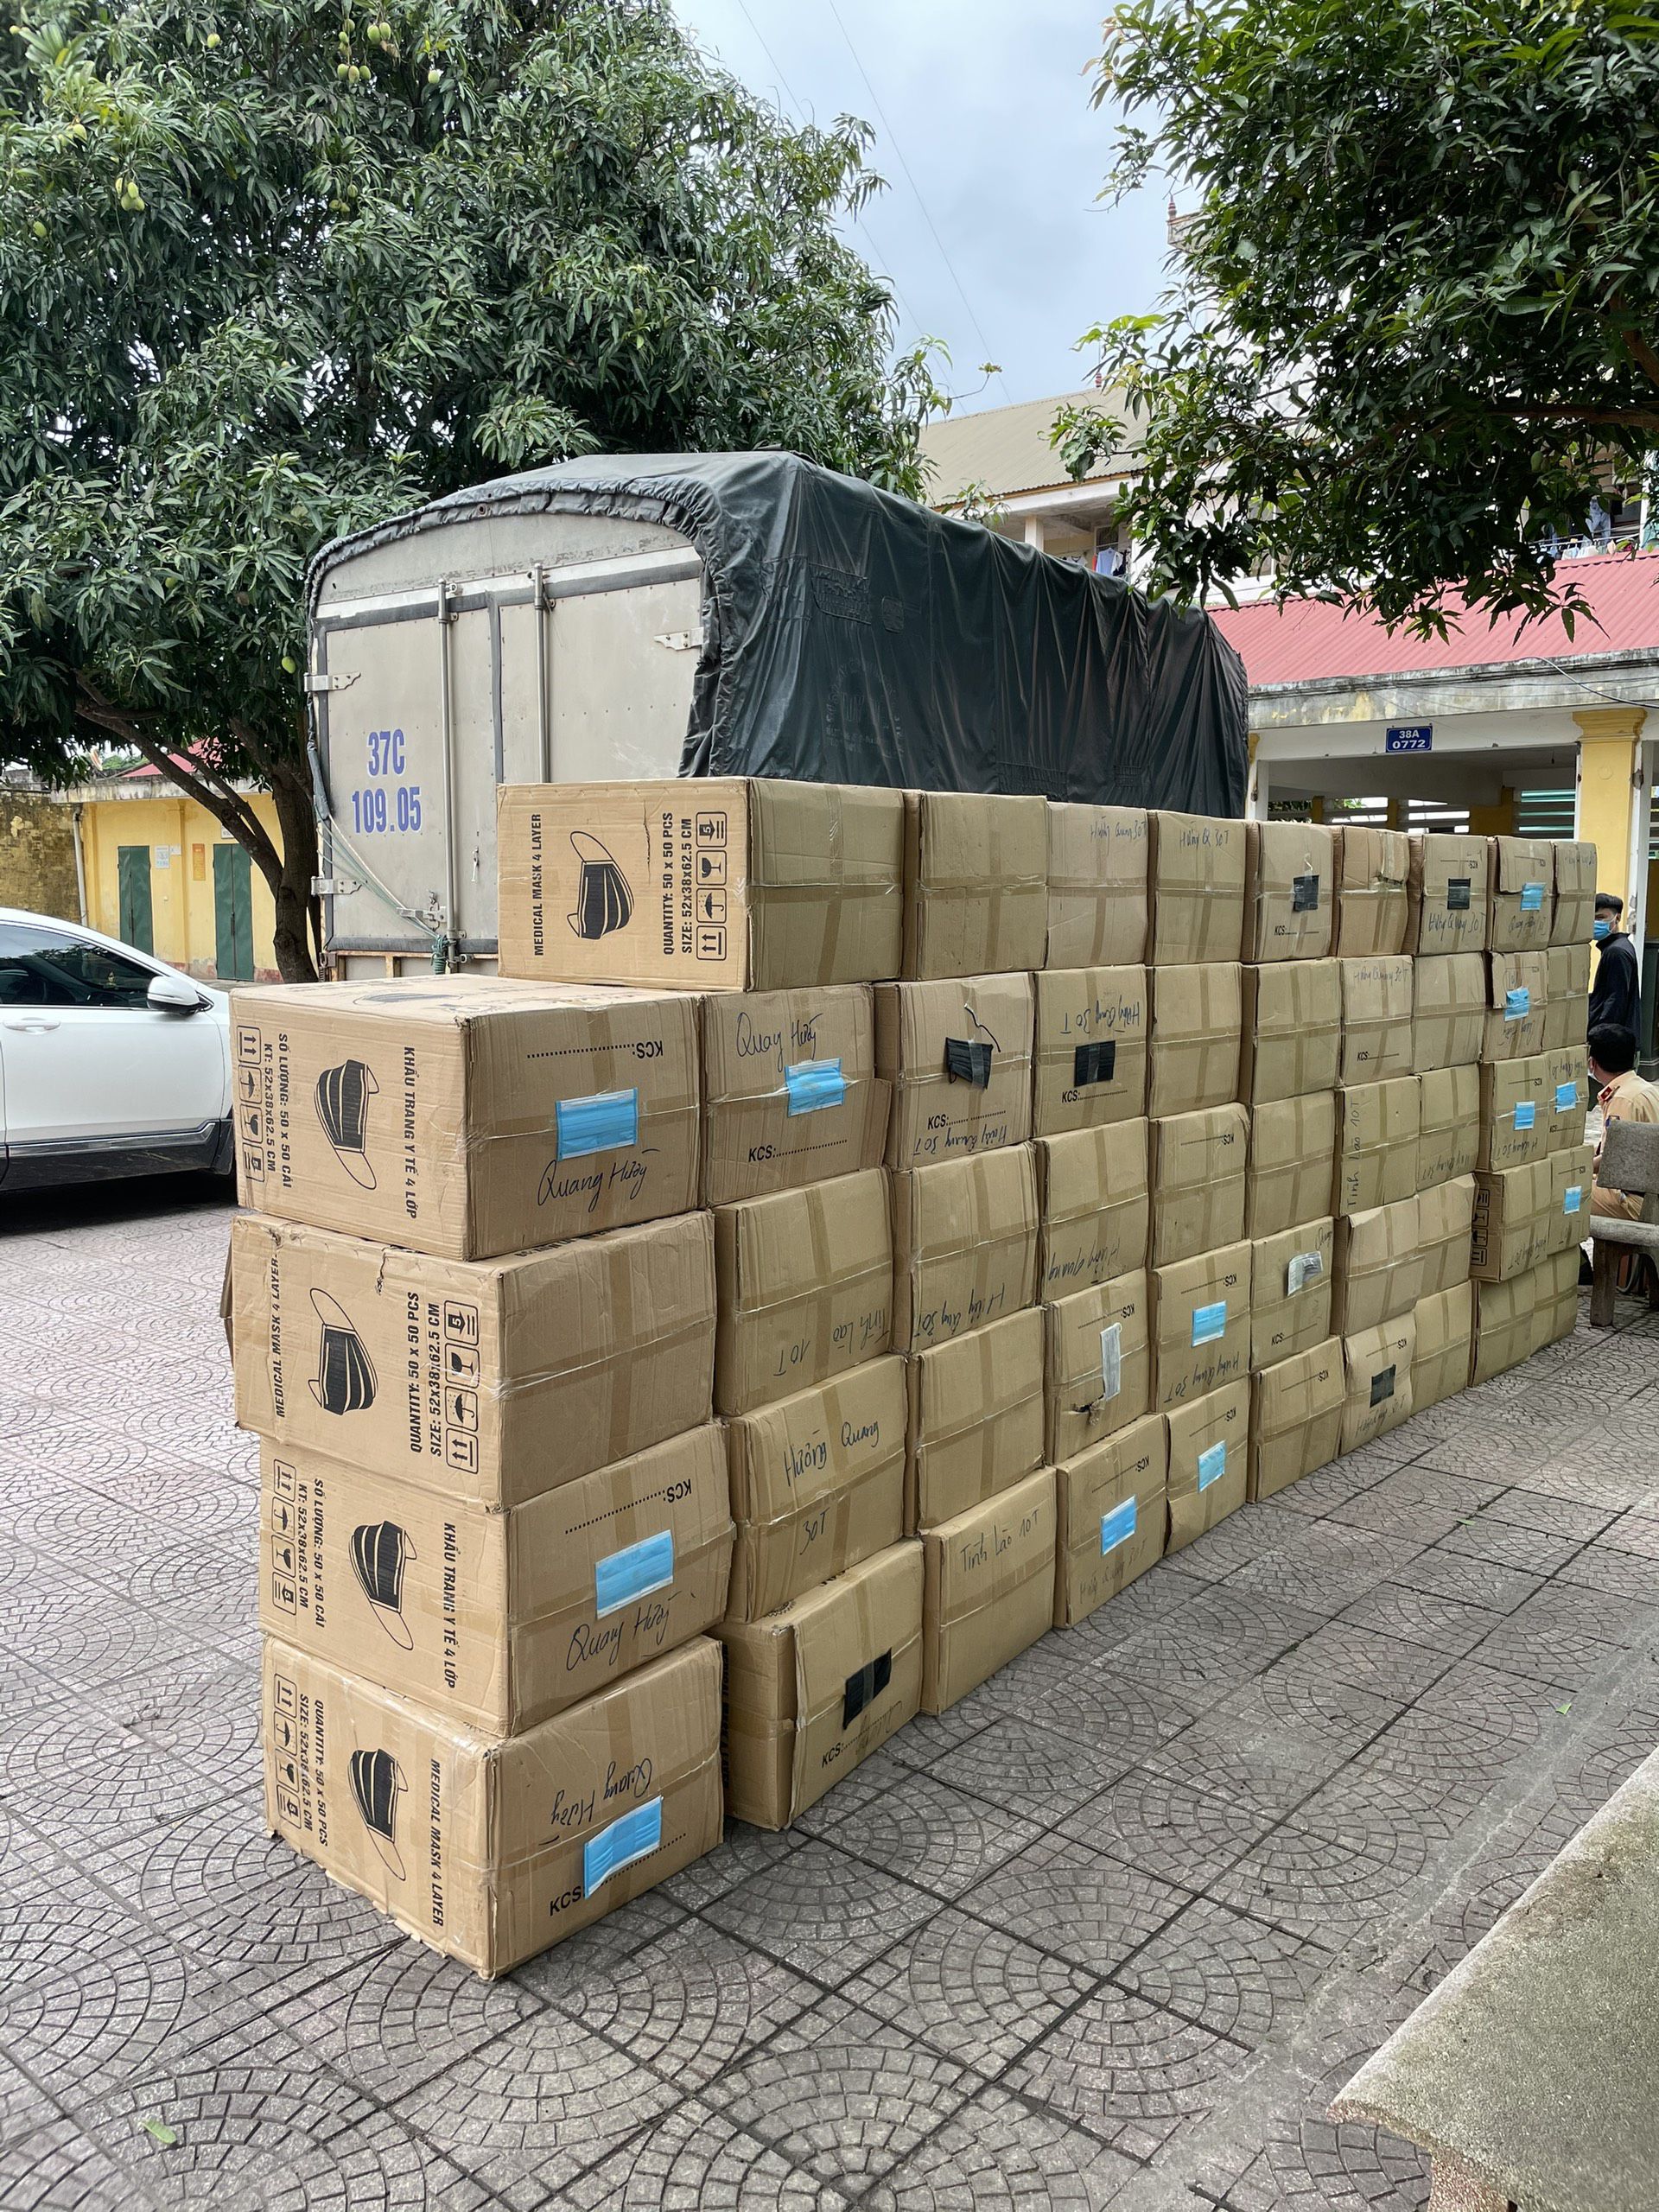 Chiếc xe tải chở 49 thùng carton khẩu trang y tế không rõ nguồn gốc, xuất xử bị đưa về trụ sở Công an huyện Hương Sơn để làm rõ